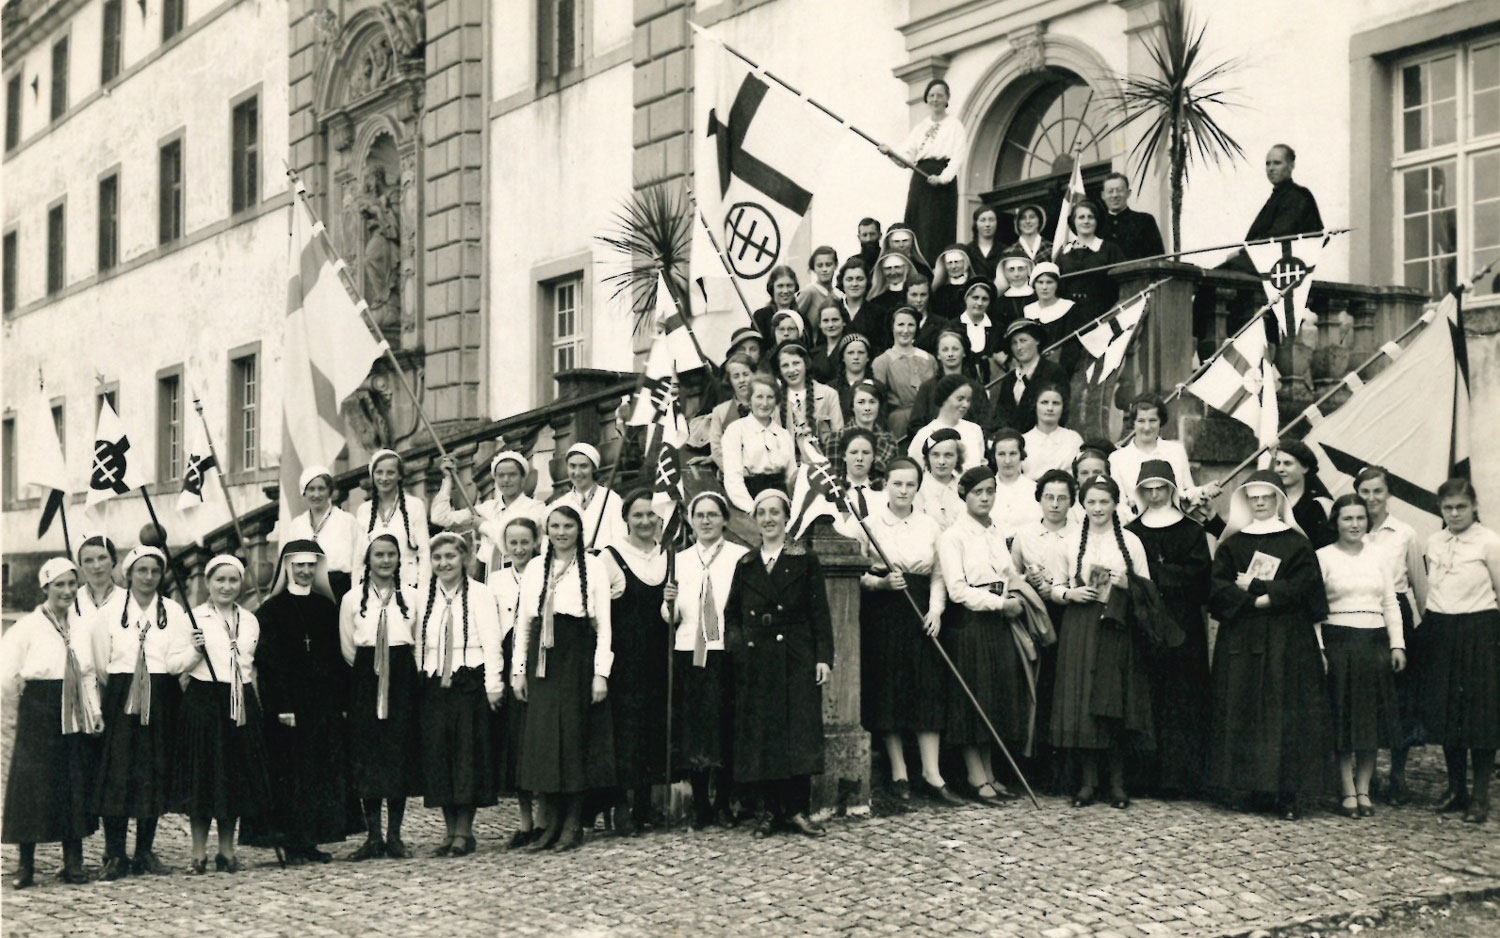 1932_09_Gruendung-miva_Gruppe-von-Schuelerinnnen-und-Lehrerinnen-vor-dem-nordportal-des-Klosters-Einsiedeln_evtl-Teilnehmerinnen-der-Missionstagung_web.jpg